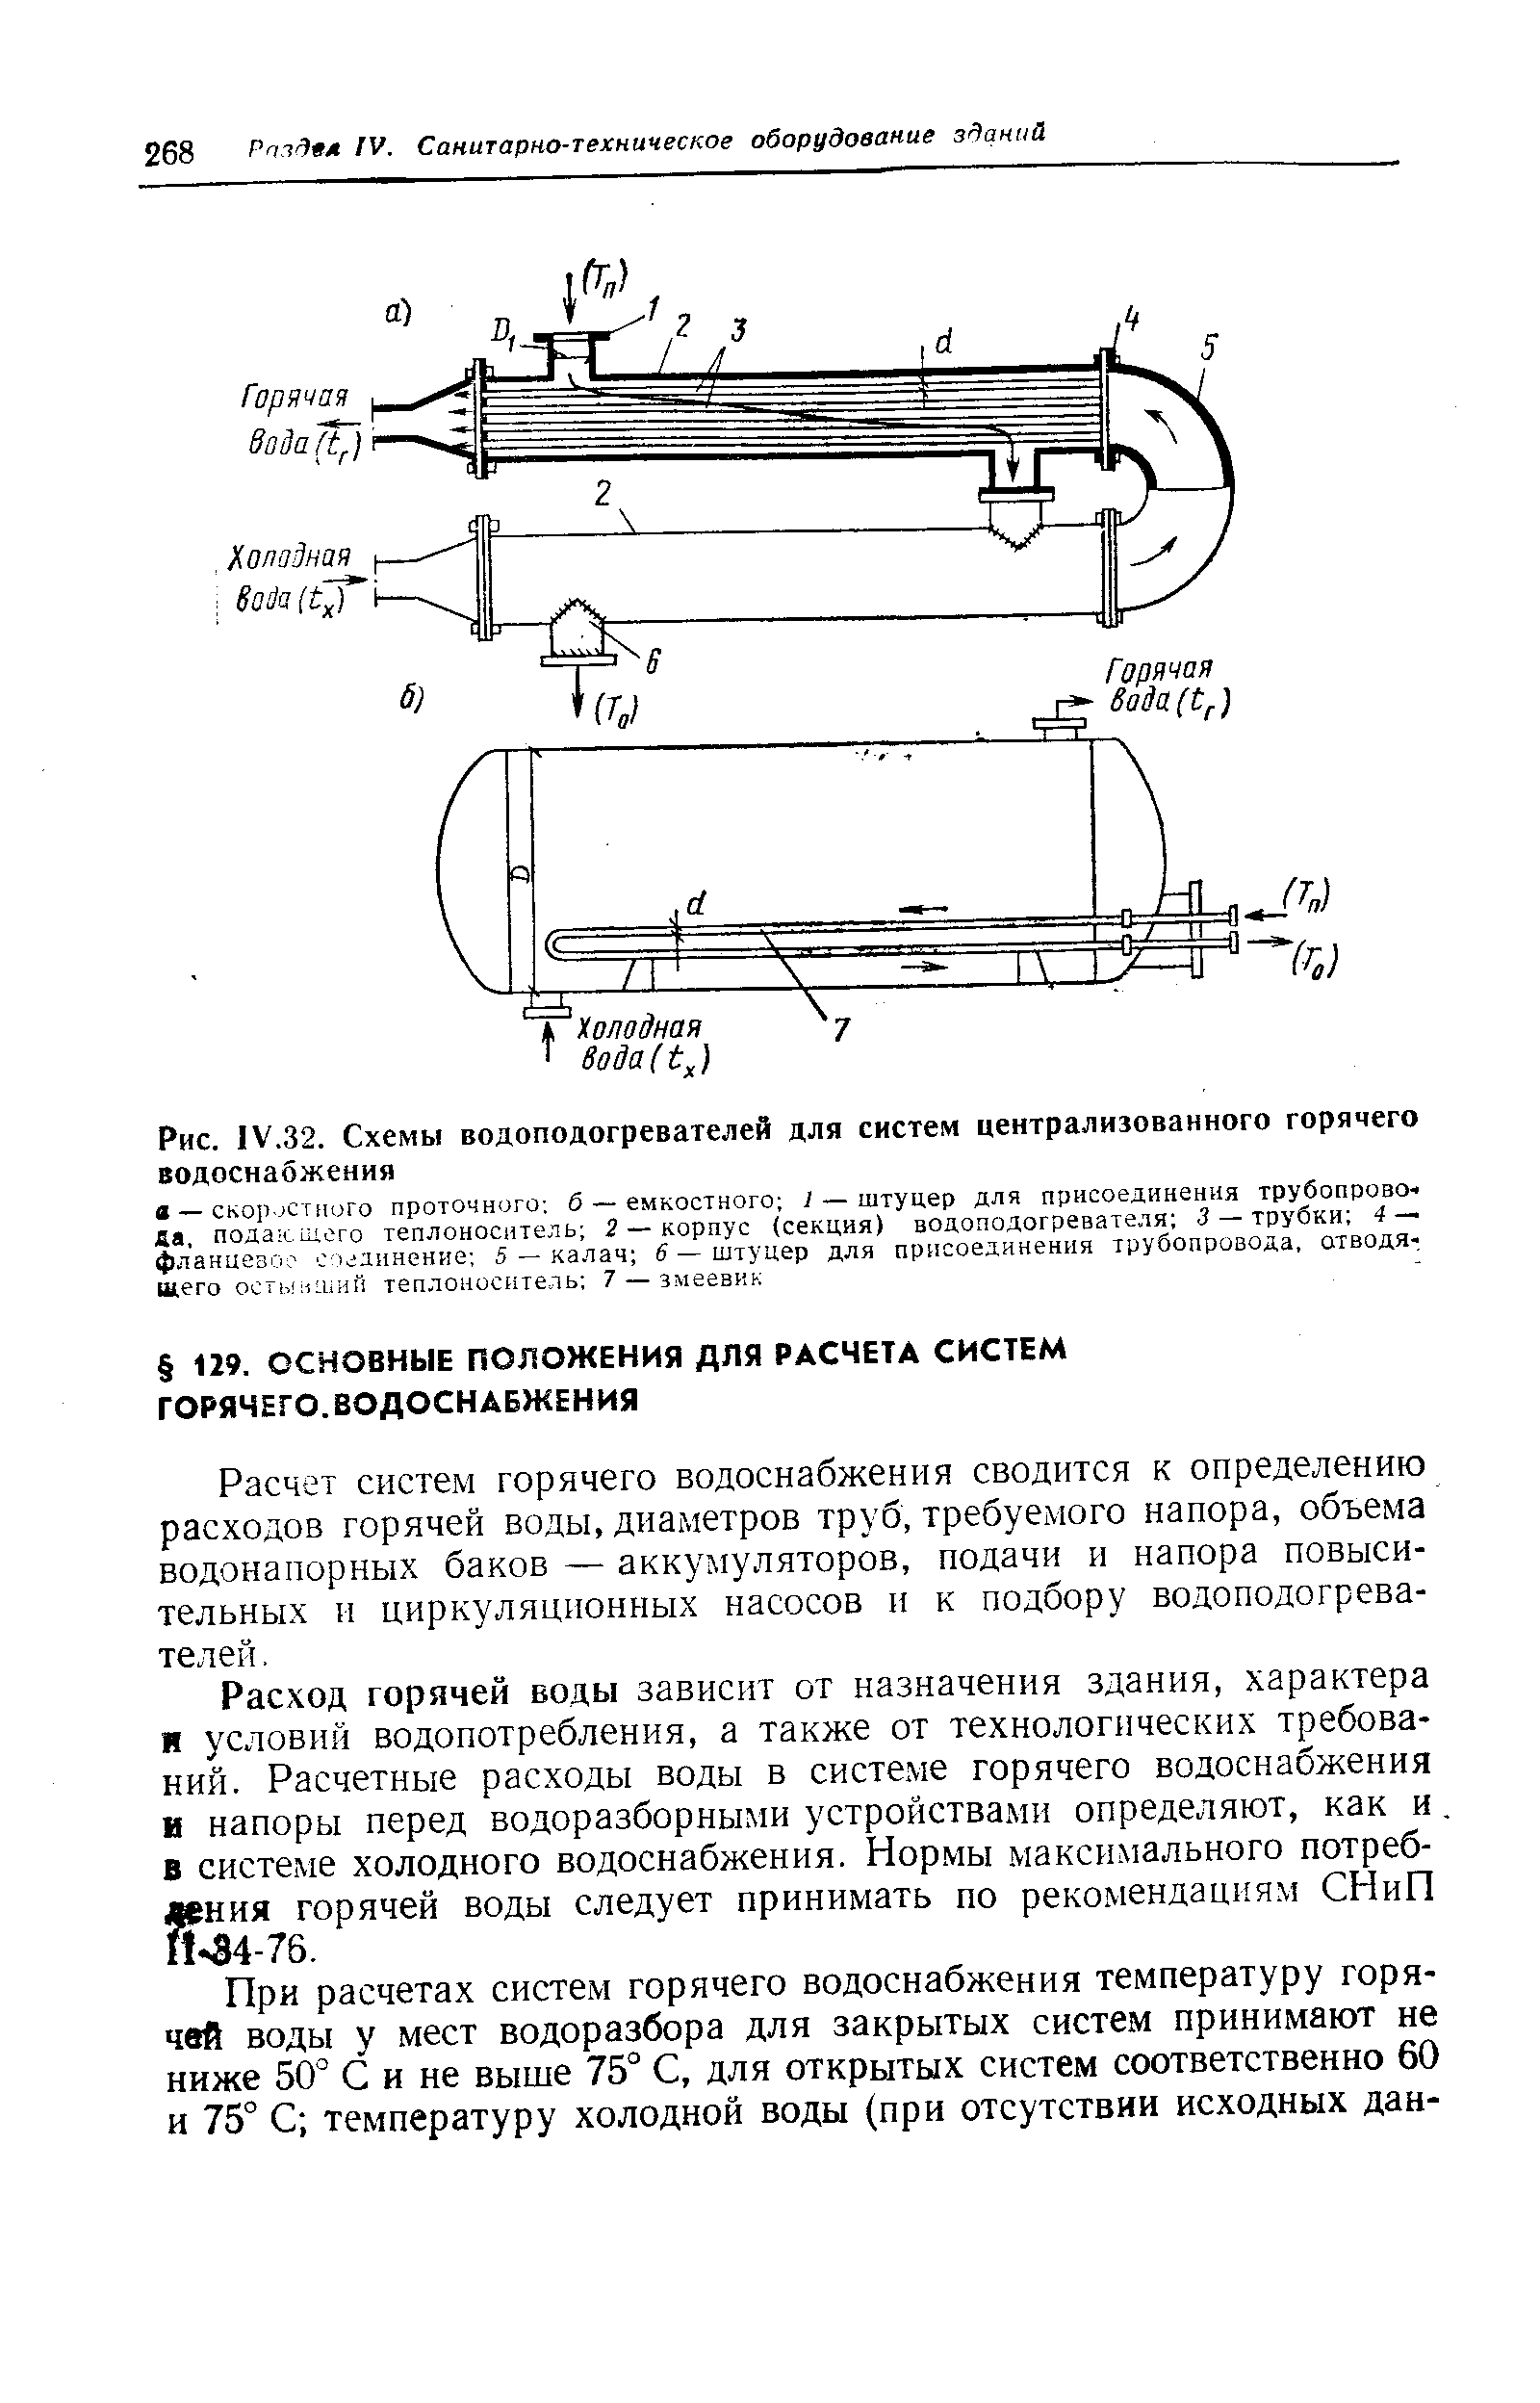 Рис. IV.32. Схемы водоподогревателей для систем централизованного горячего водоснабжения
